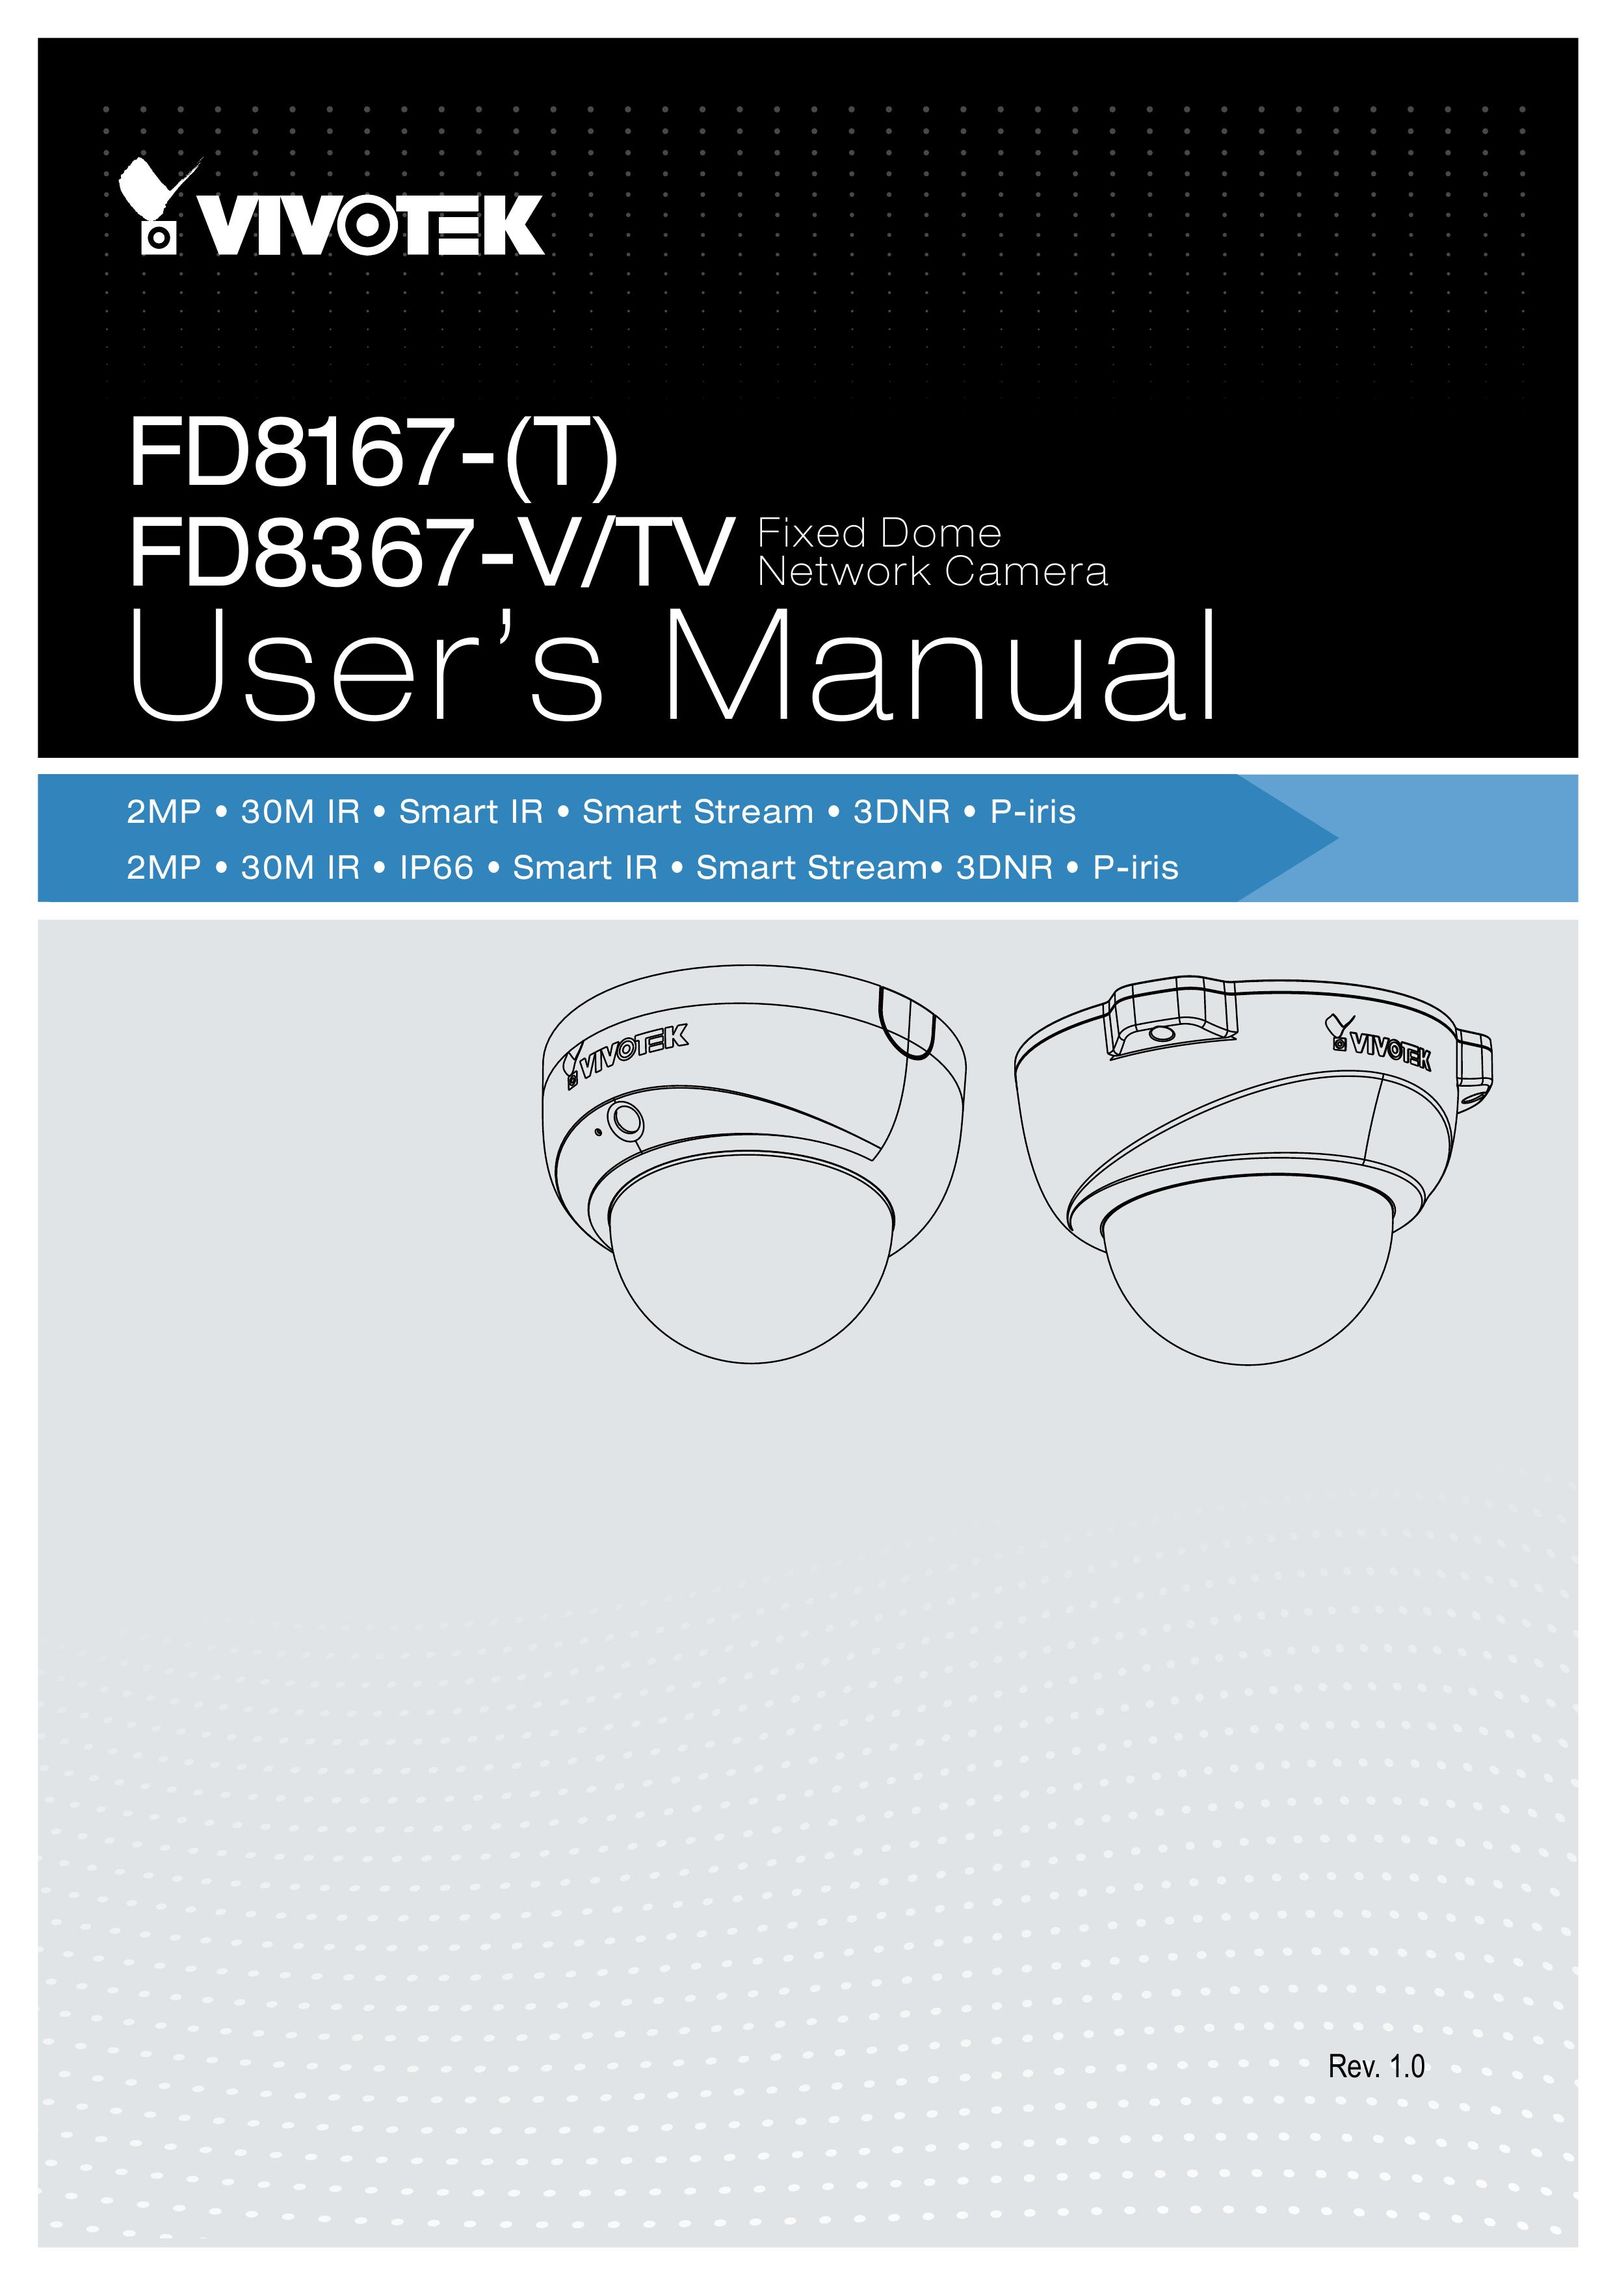 Vivotek FD8167-(T) Home Security System User Manual